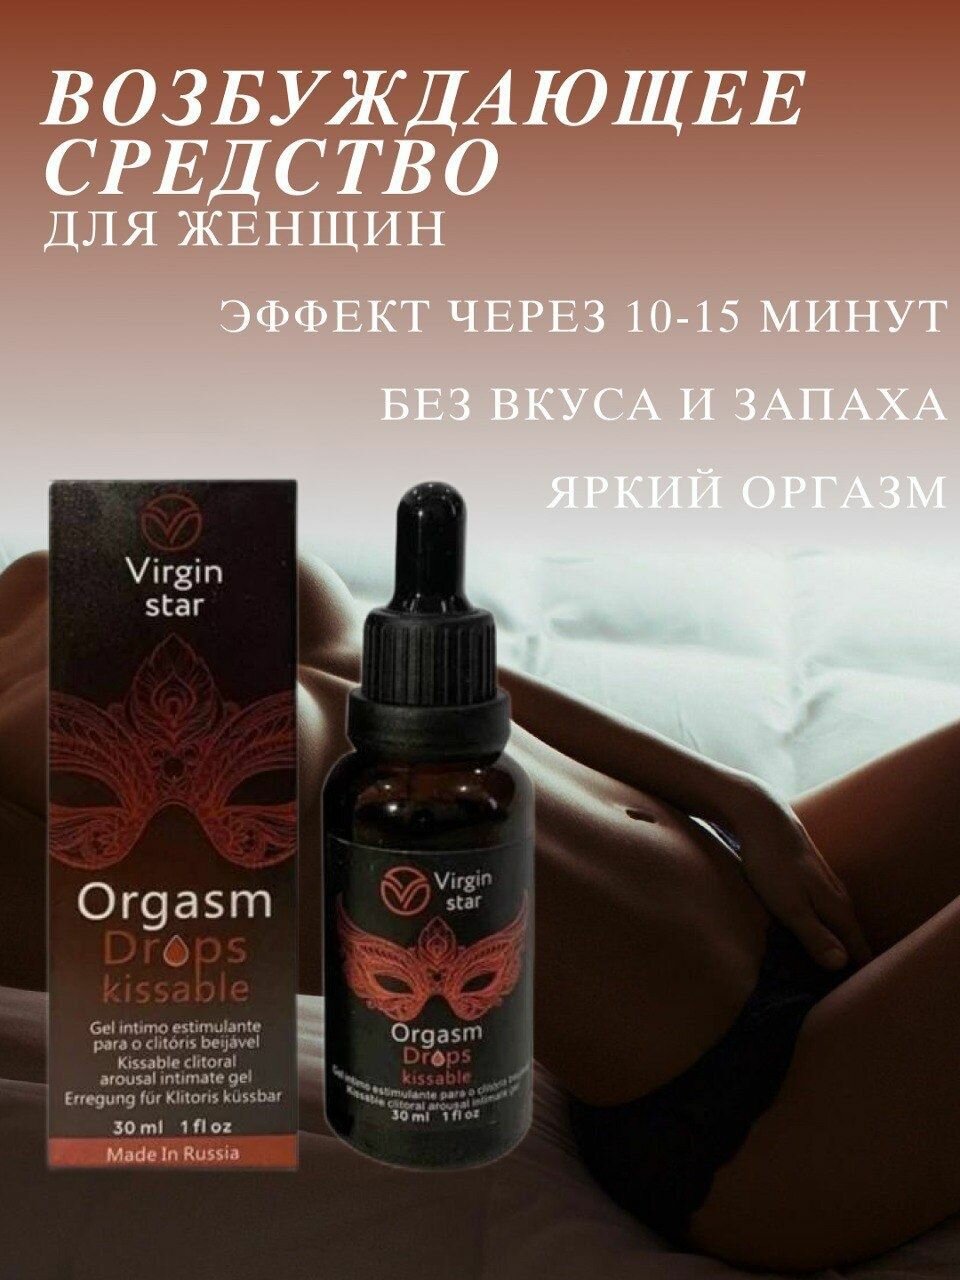 Orgasm Drops Kissable Возбуждающие капли, виагра для женщин, интимный гель, виагра для женщин